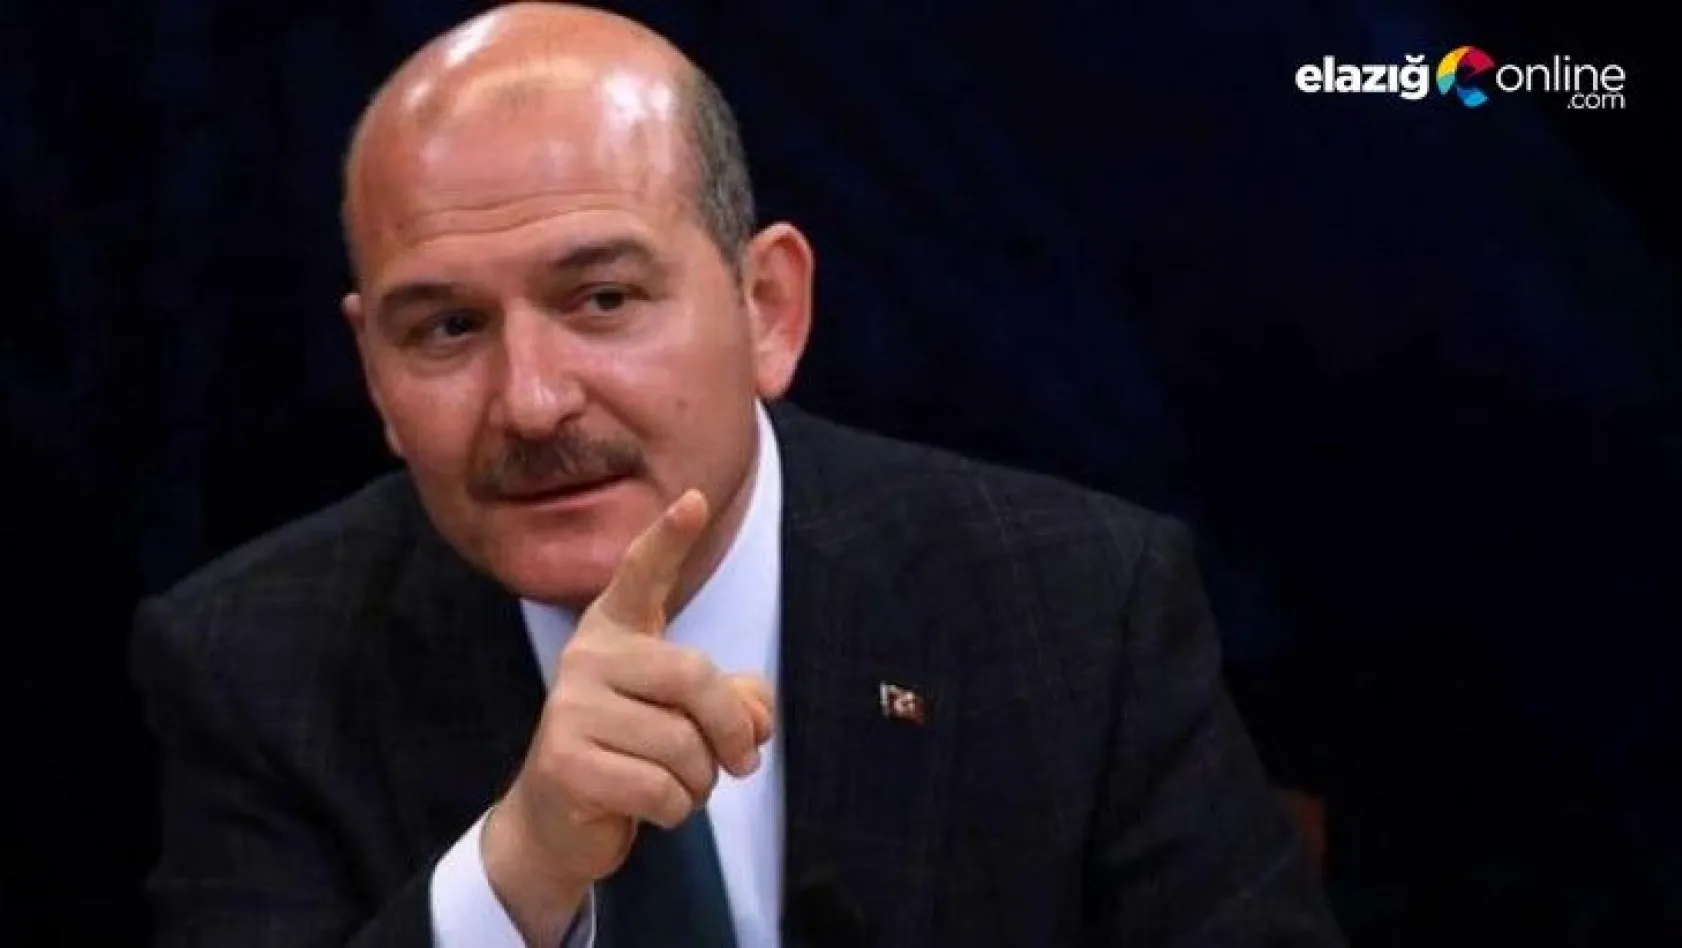 İçişleri Bakanı Süleyman Soylu: Hiçbir şey gizli kalmaz, kalmayacaktır